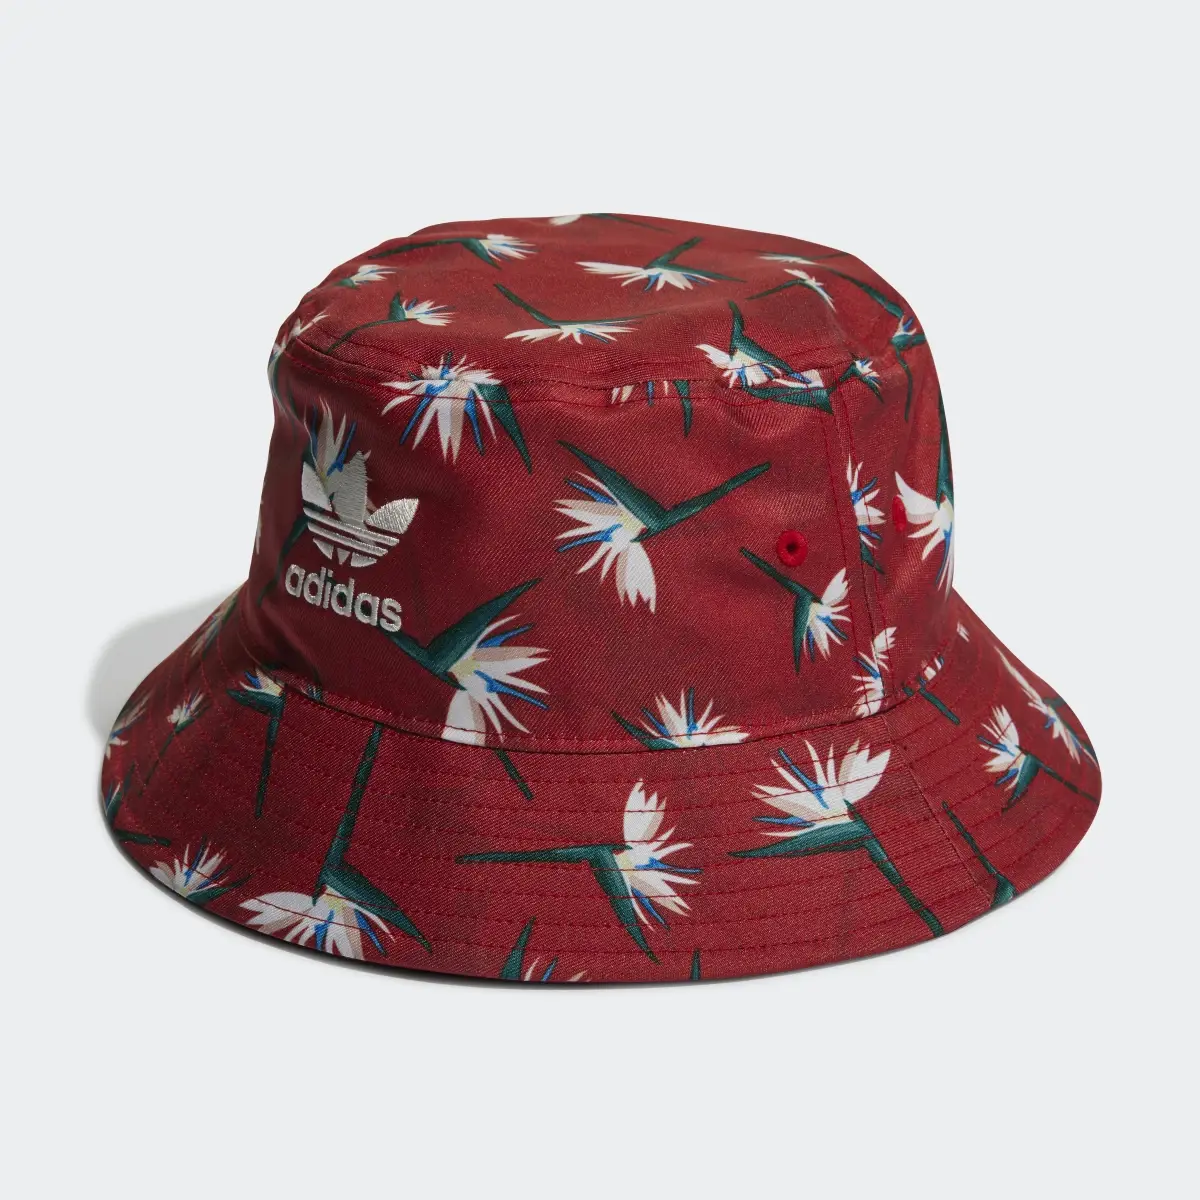 Adidas Thebe Magugu Bucket Hat. 2